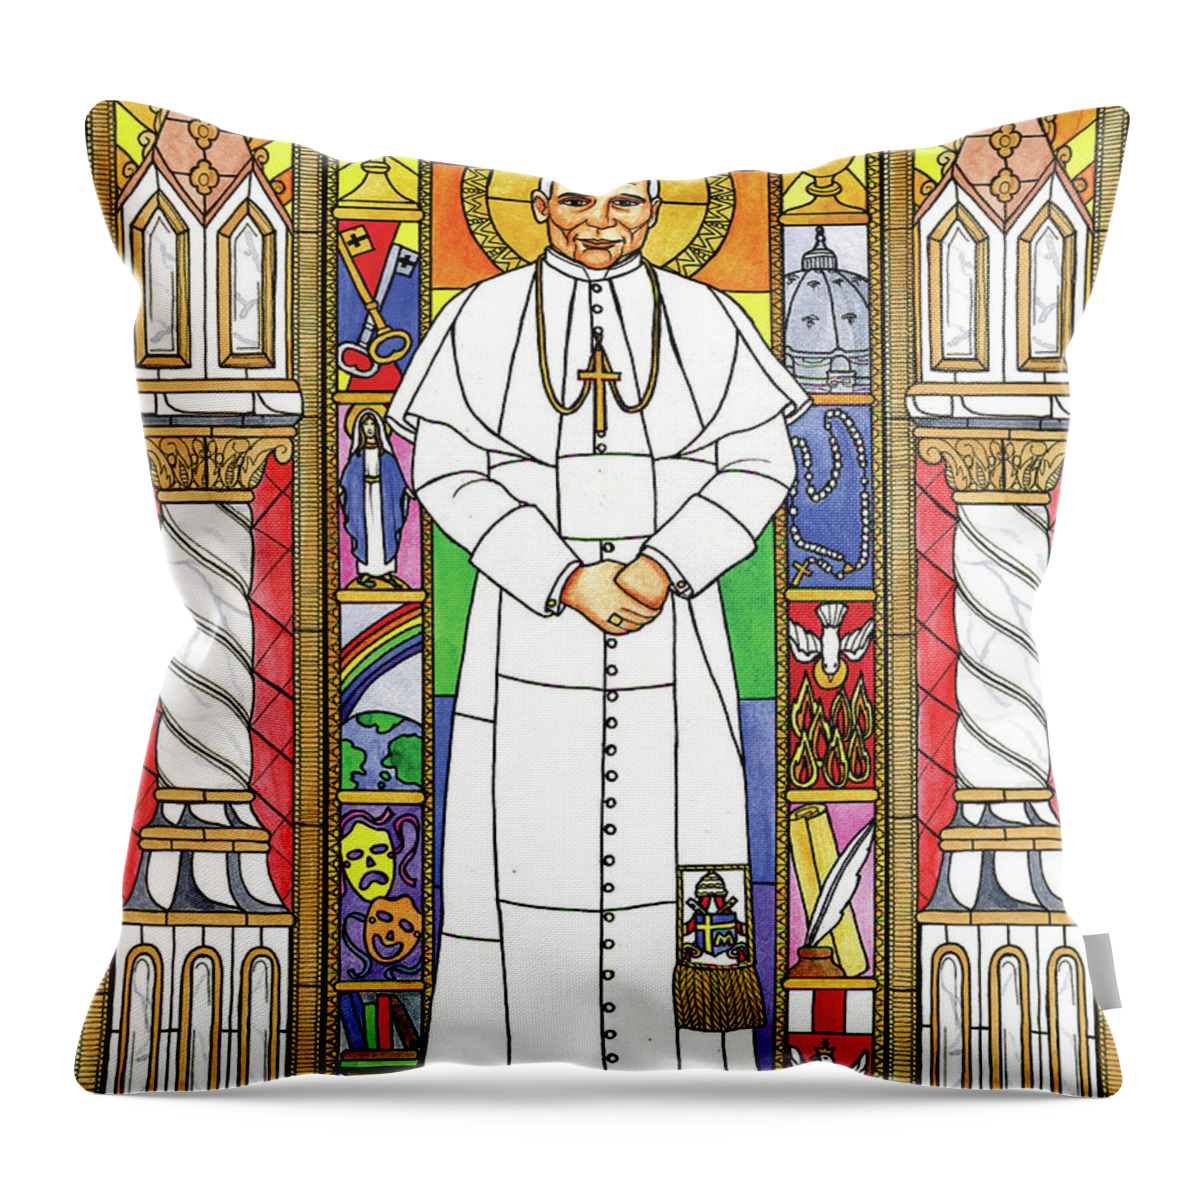 Saint John Paul Ii Throw Pillow featuring the painting St. John Paul II by Brenda Nippert